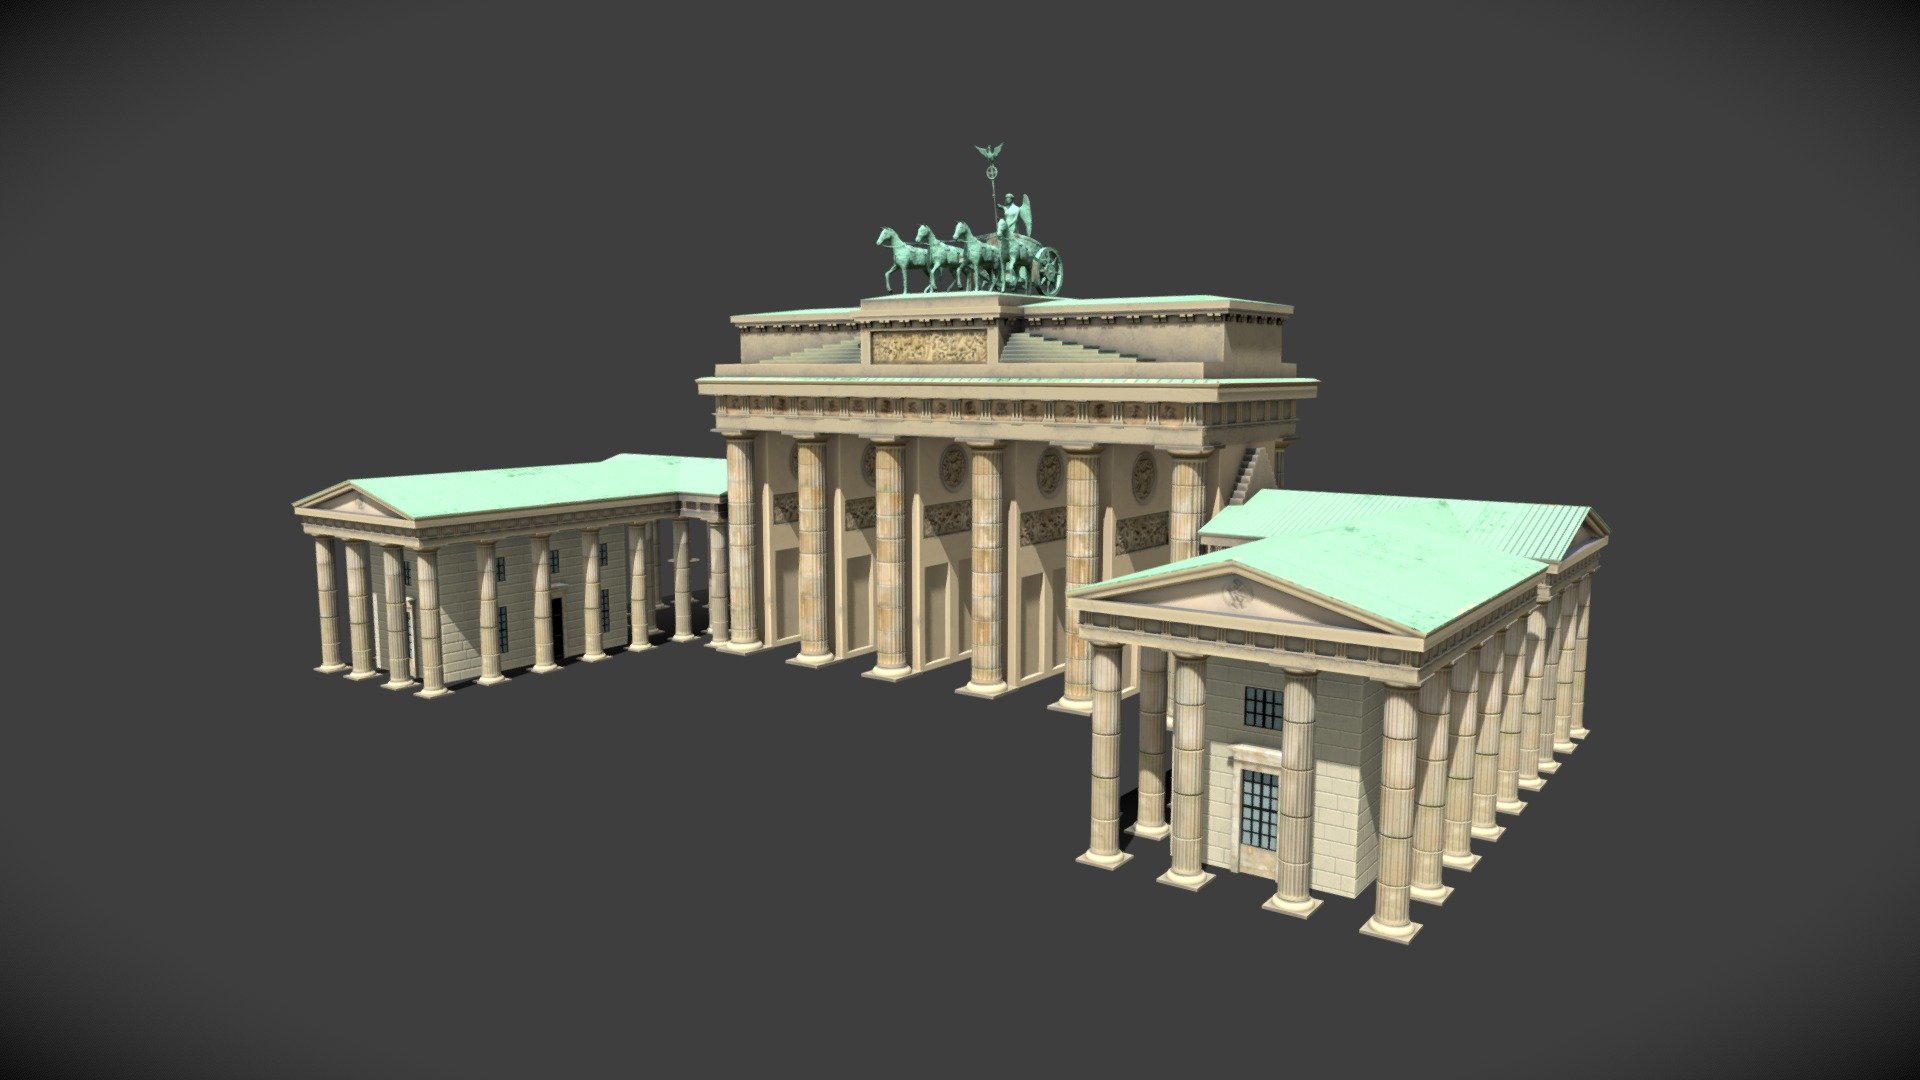 Game ready Brandenburg Gate model, good for rendering as well. Enjoy - Brandenburg Gate - 3D model by astistudio 3d model